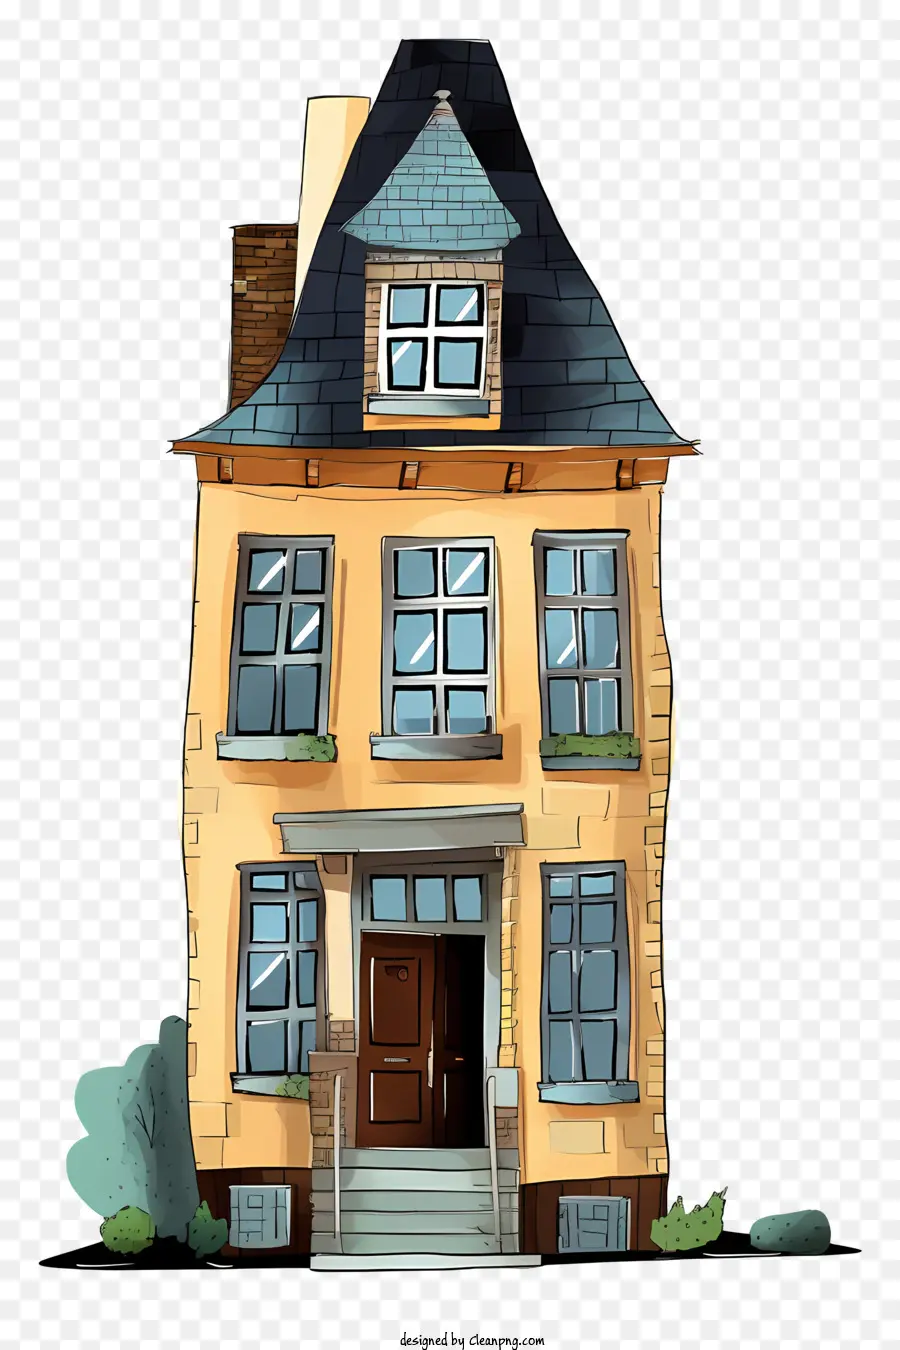 Nhà hai tầng ba tầng cửa sổ phòng khách hiên nhỏ - Ngôi nhà hai tầng với hiên nhà nhỏ và ban công. 
Gạch vàng, không có cây gần đó